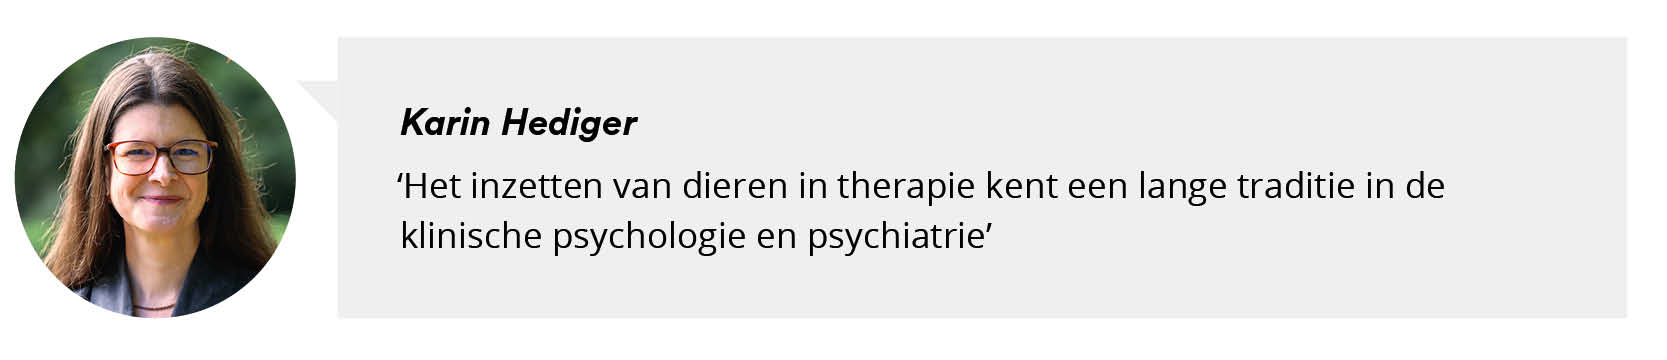 Portretfoto Karin Hediger met citaat: Het inzetten van dieren in therapie kent een lange traditie in de klinische psychologie en psychiatrie